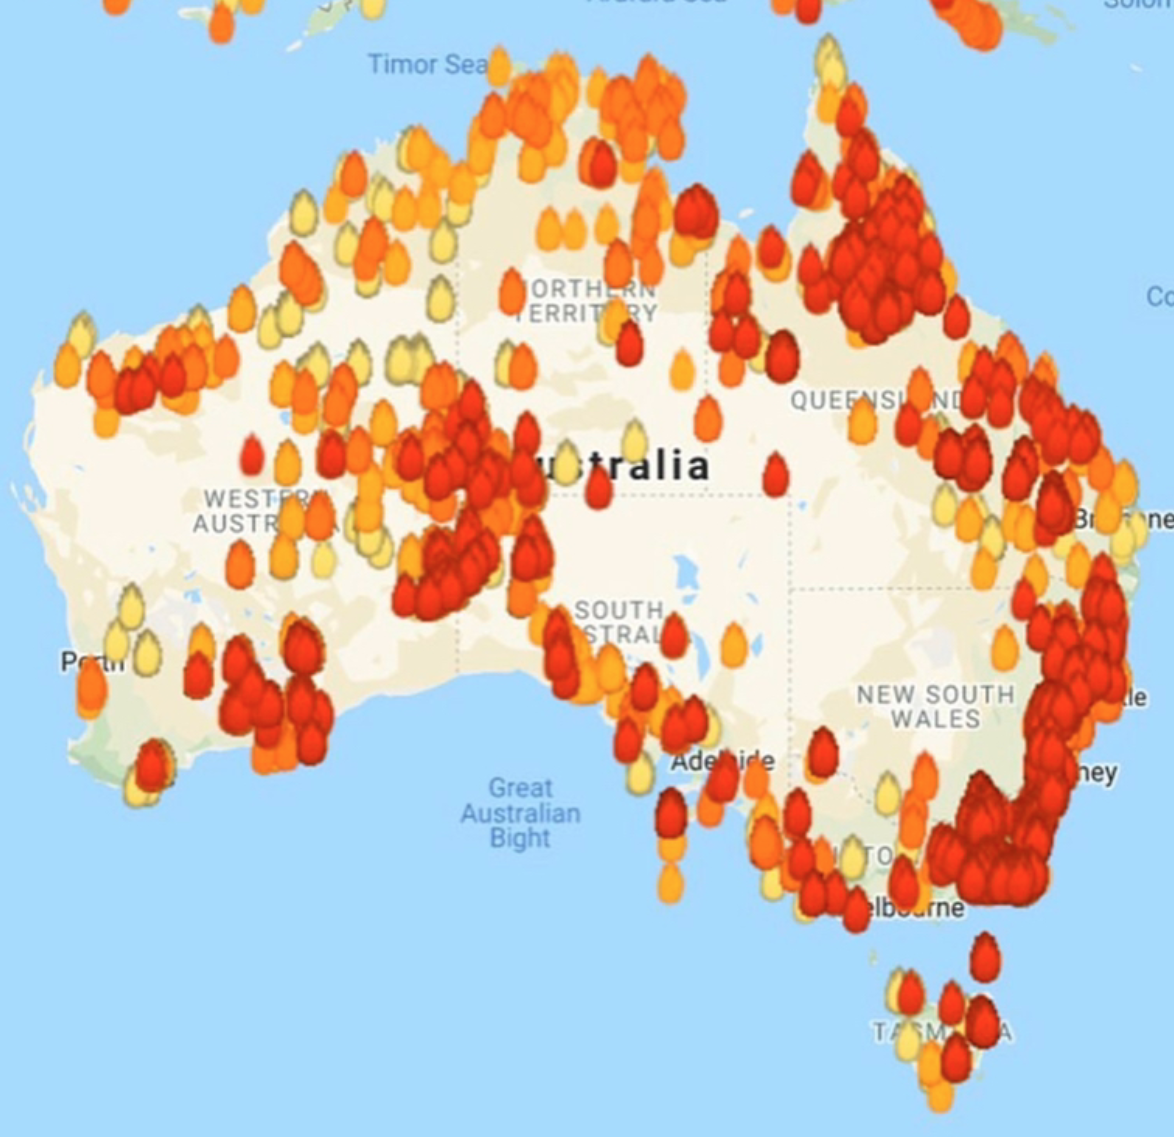 オーストラリア山火事 森林火災 原因と現在の状況 白い旅人ブログ